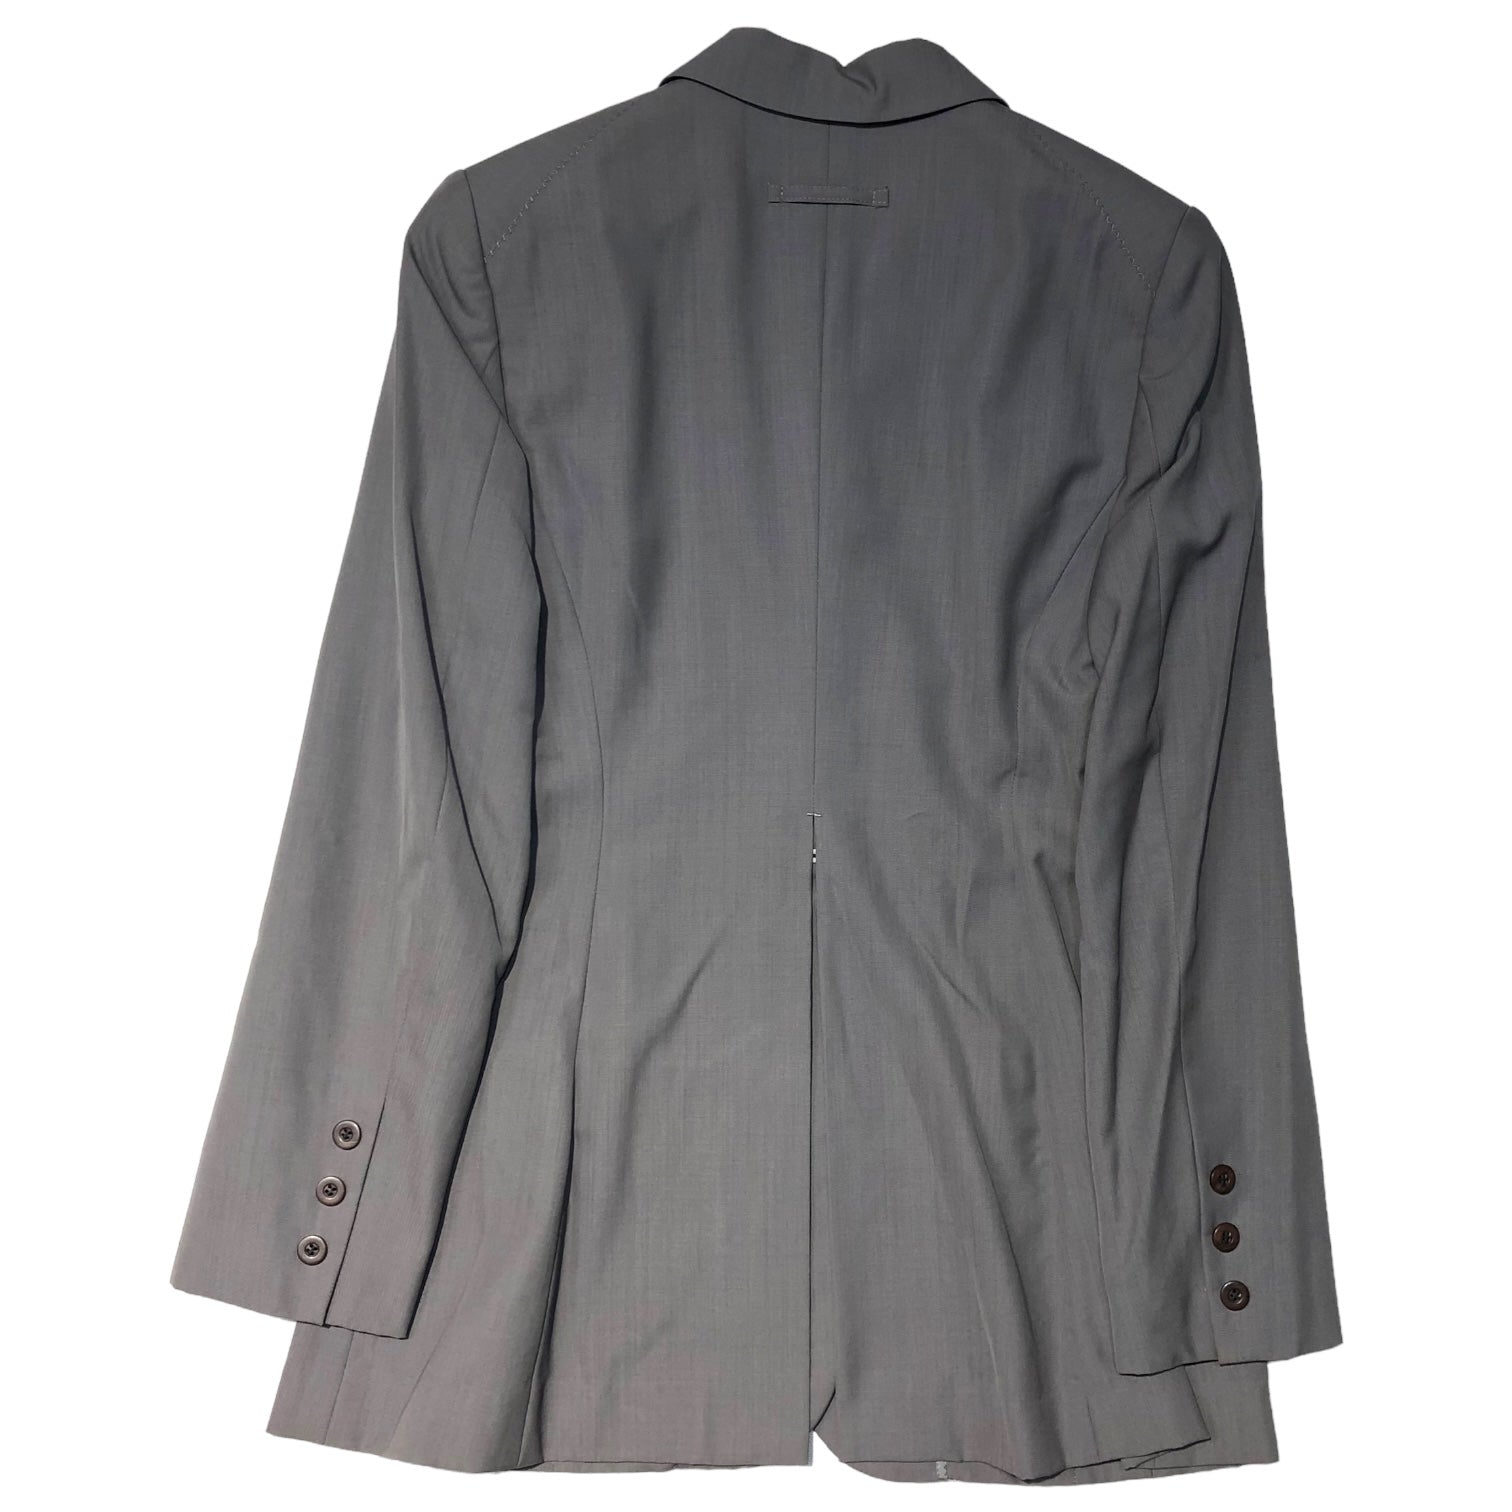 Jean Paul GAULTIER FEMME(ジャンポールゴルチエファム) 90’s 3B jacket design setup 3Bジャケット デザイン セットアップ 40(L程度) グレー スラックス テーラード スーツ